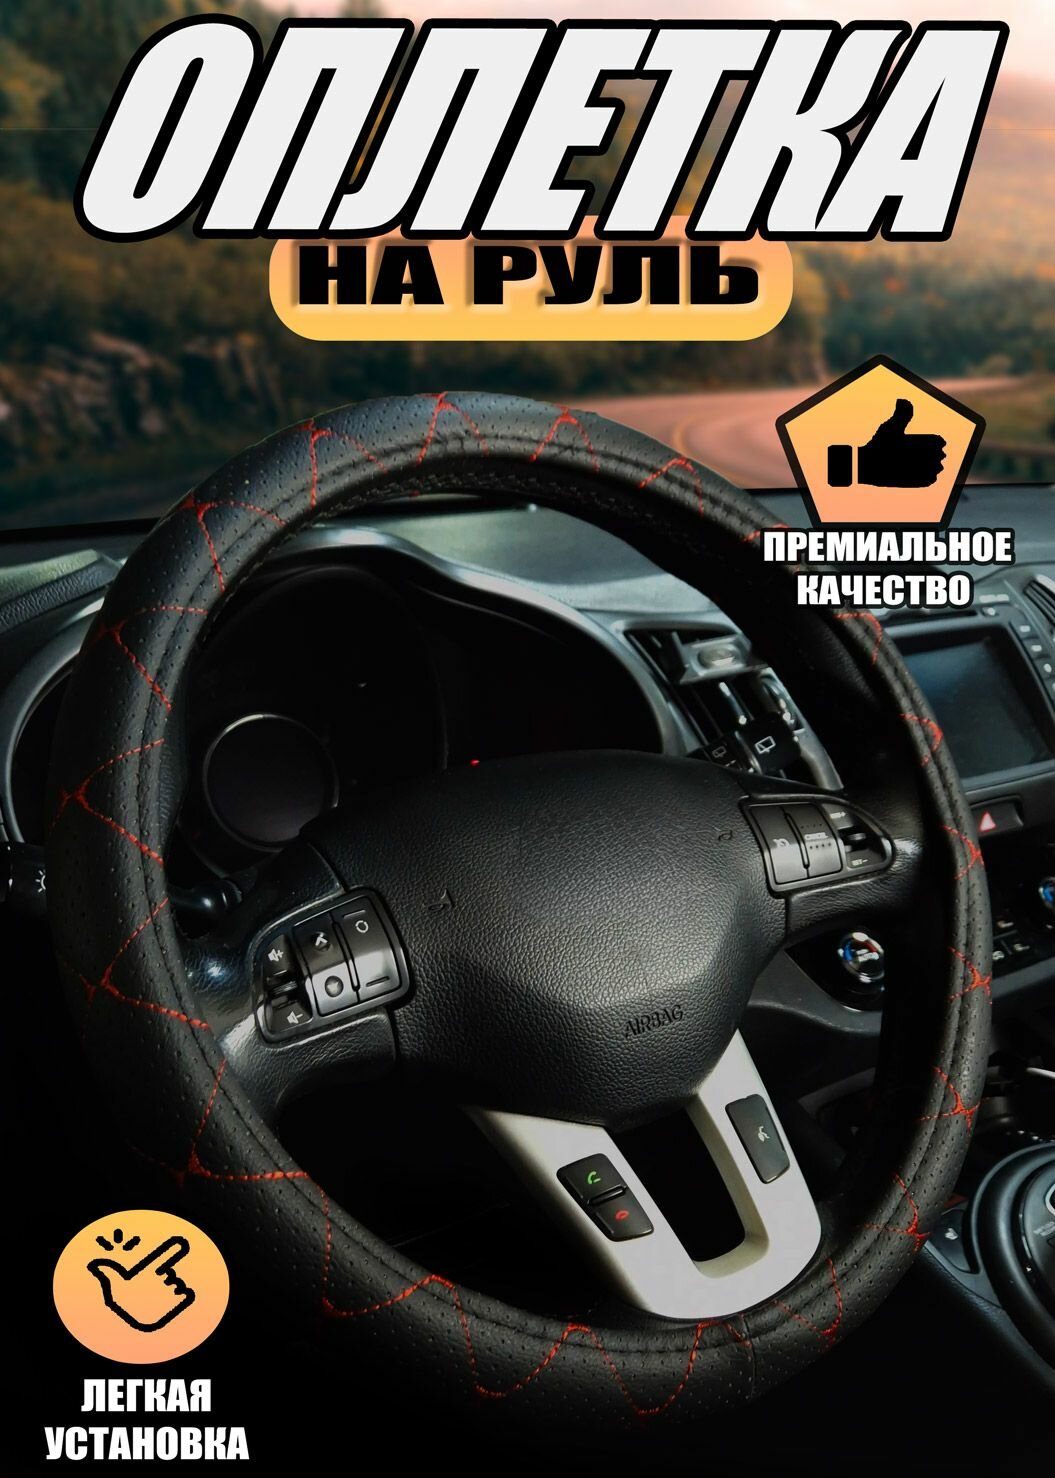 Оплетка, чехол (накидка) на руль Мерседес-Бенц г-класс амг (2015 - 2018) внедорожник 5 дверей / Mercedes-Benz G-Class AMG, экокожа, Черный с красной строчкой